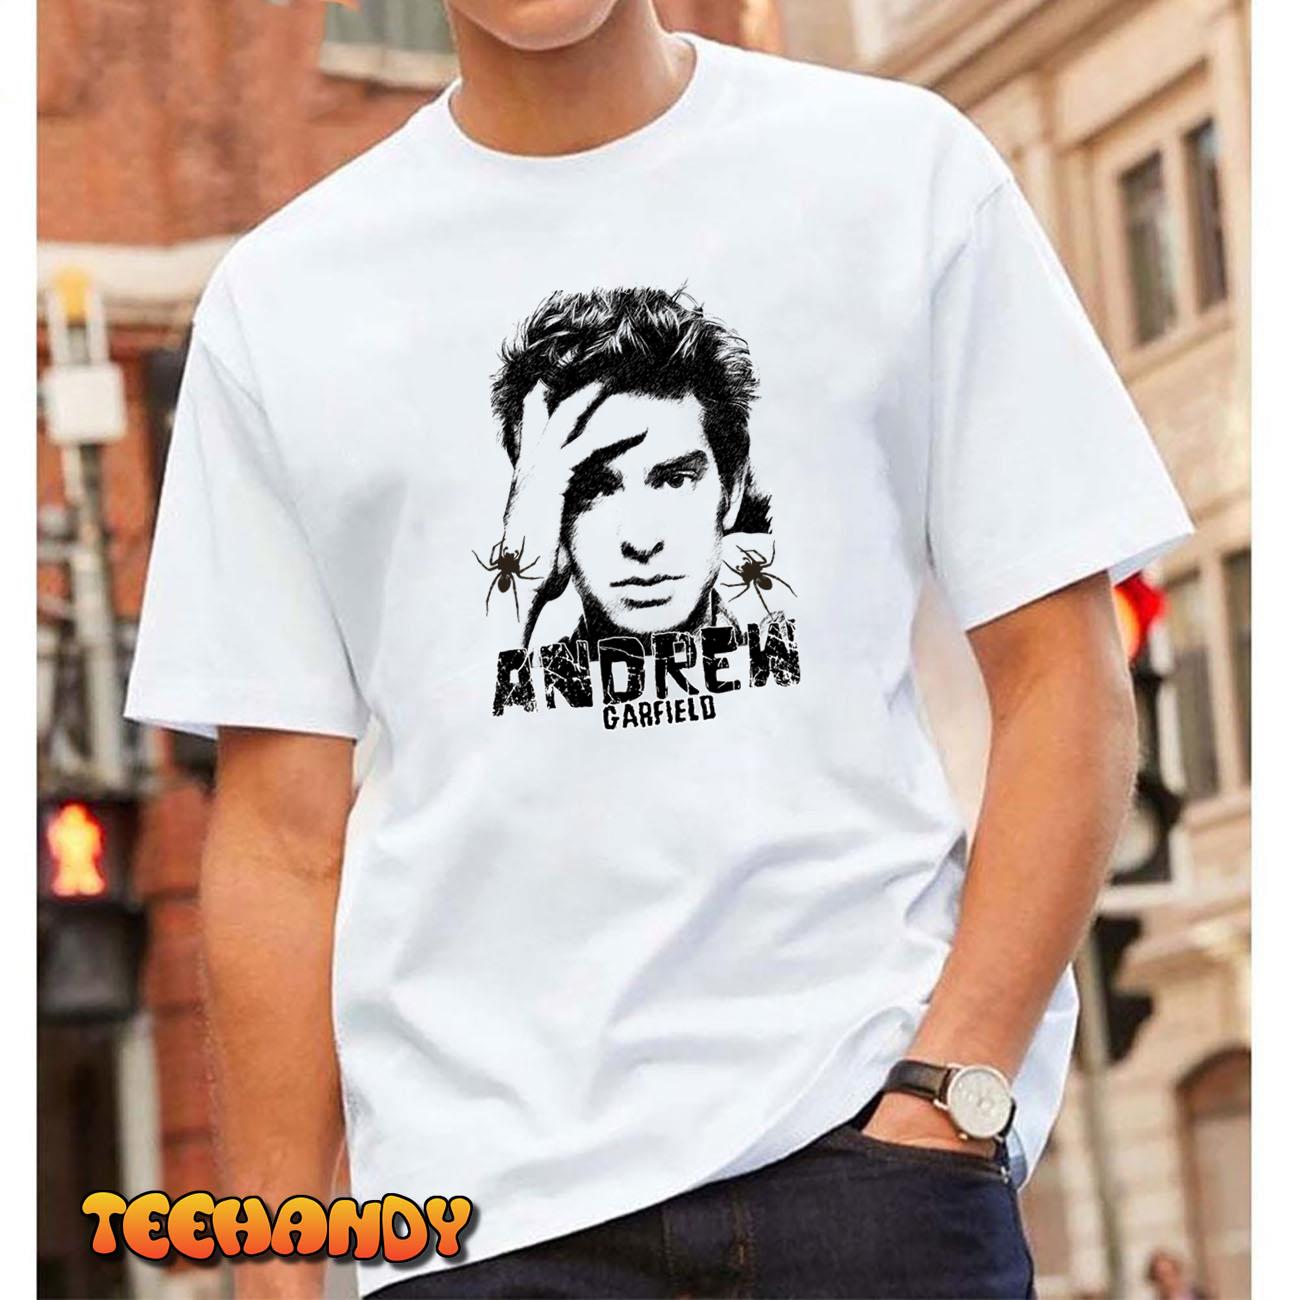 Actor Andrew Garfield Sketch Art Unisex T-shirt